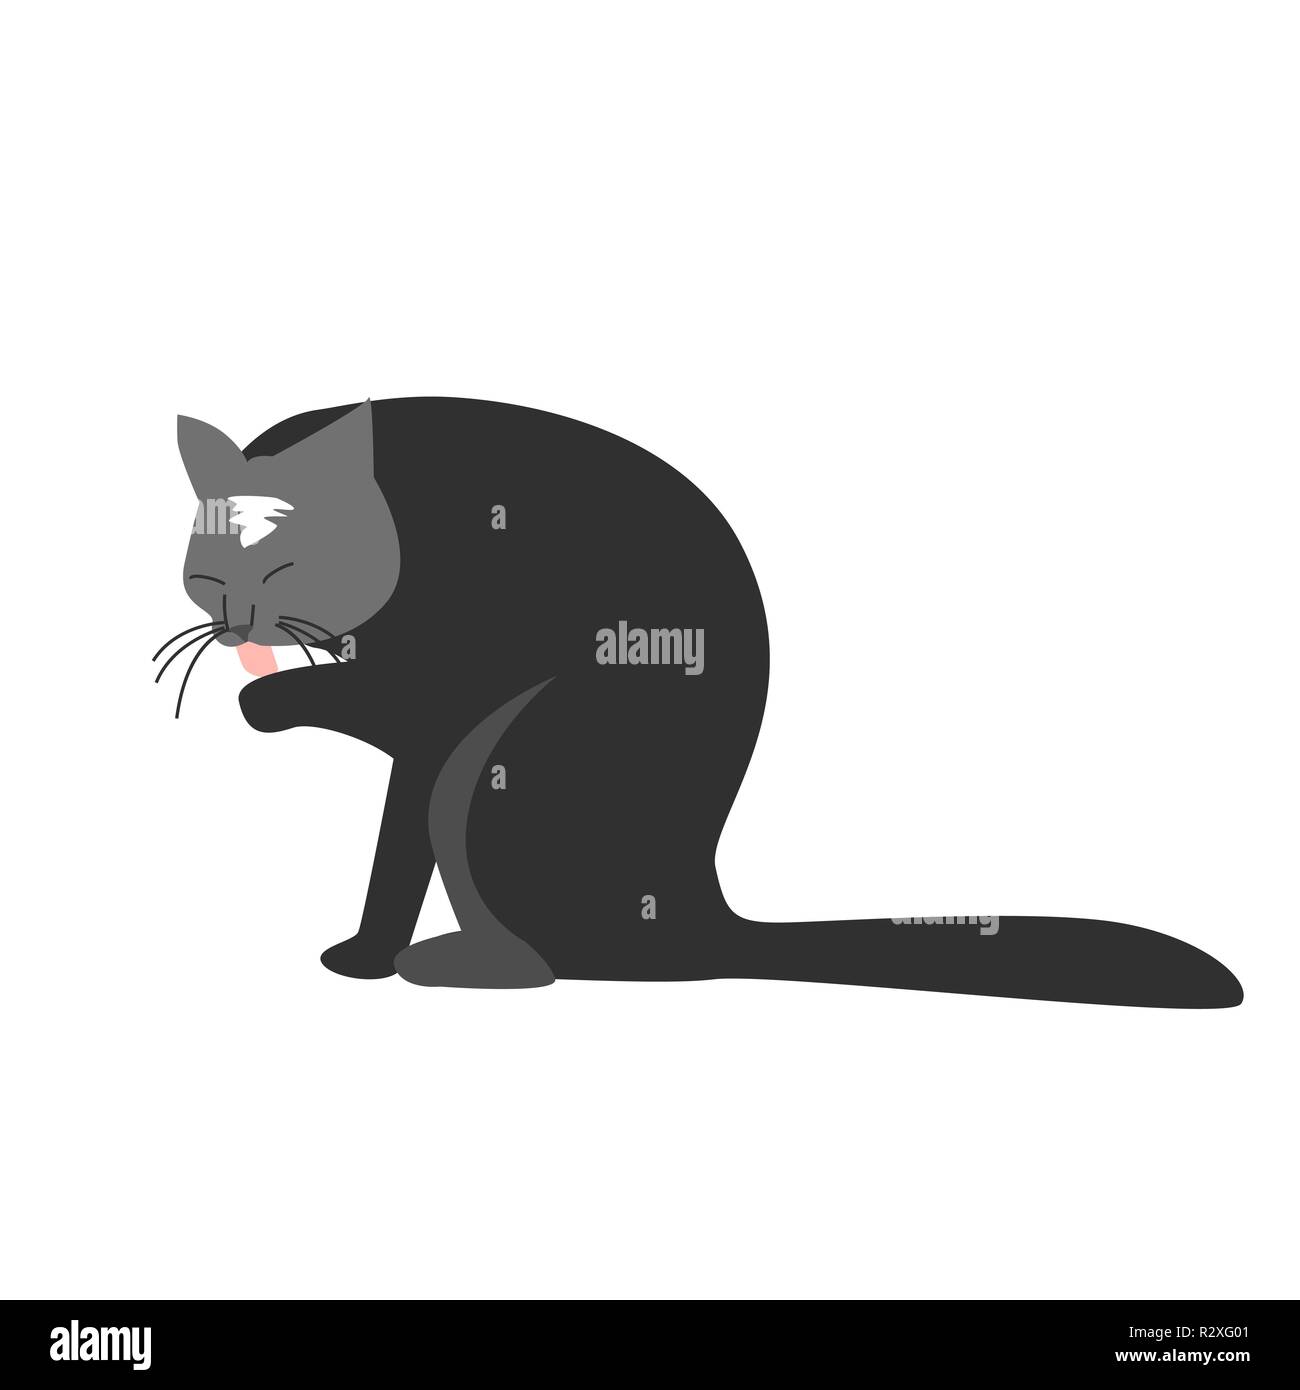 Lustig Hand Gezeichnet Schwarze Katze Lecken Ist Seine Pfote Vector Illustration Einer Zeichentrickfigur Stock Vektorgrafik Alamy